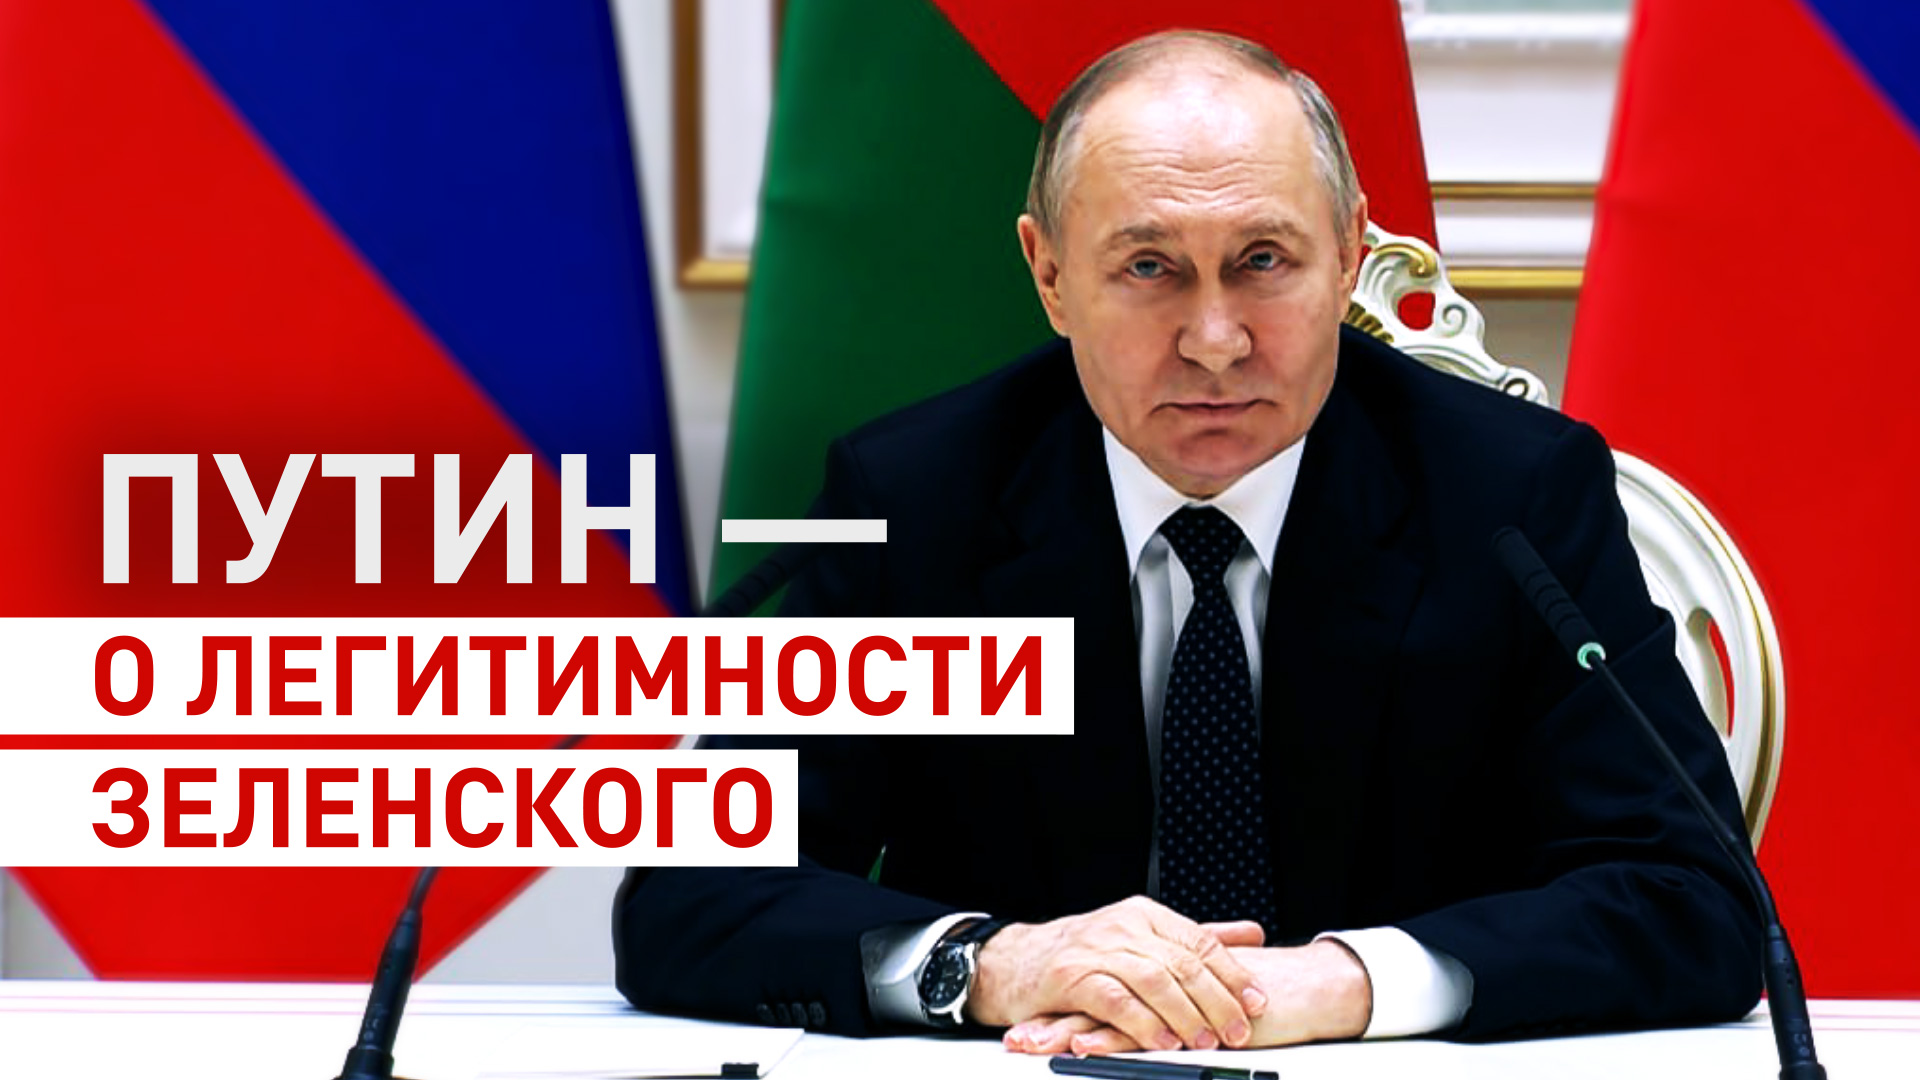 «А с кем вести переговоры?»: Путин — о легитимности власти на Украине